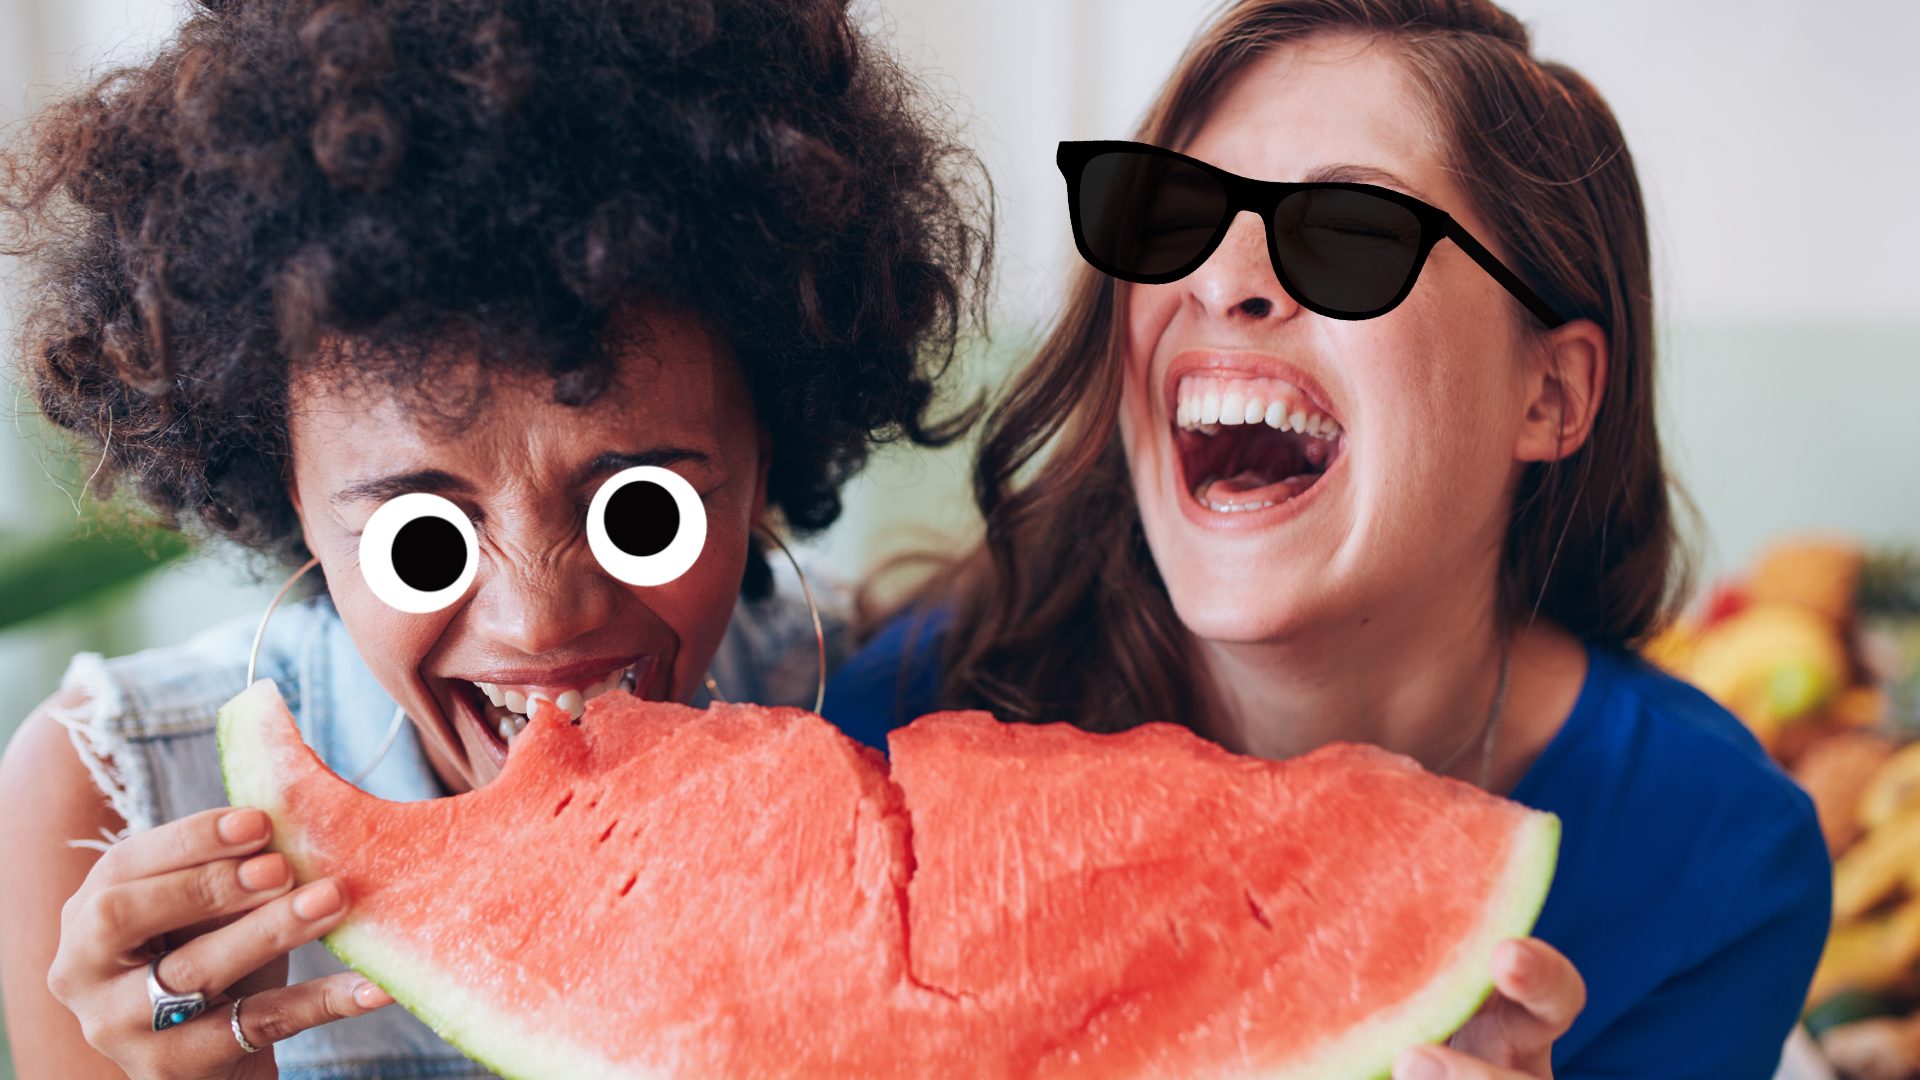 Two women laughing at fruit